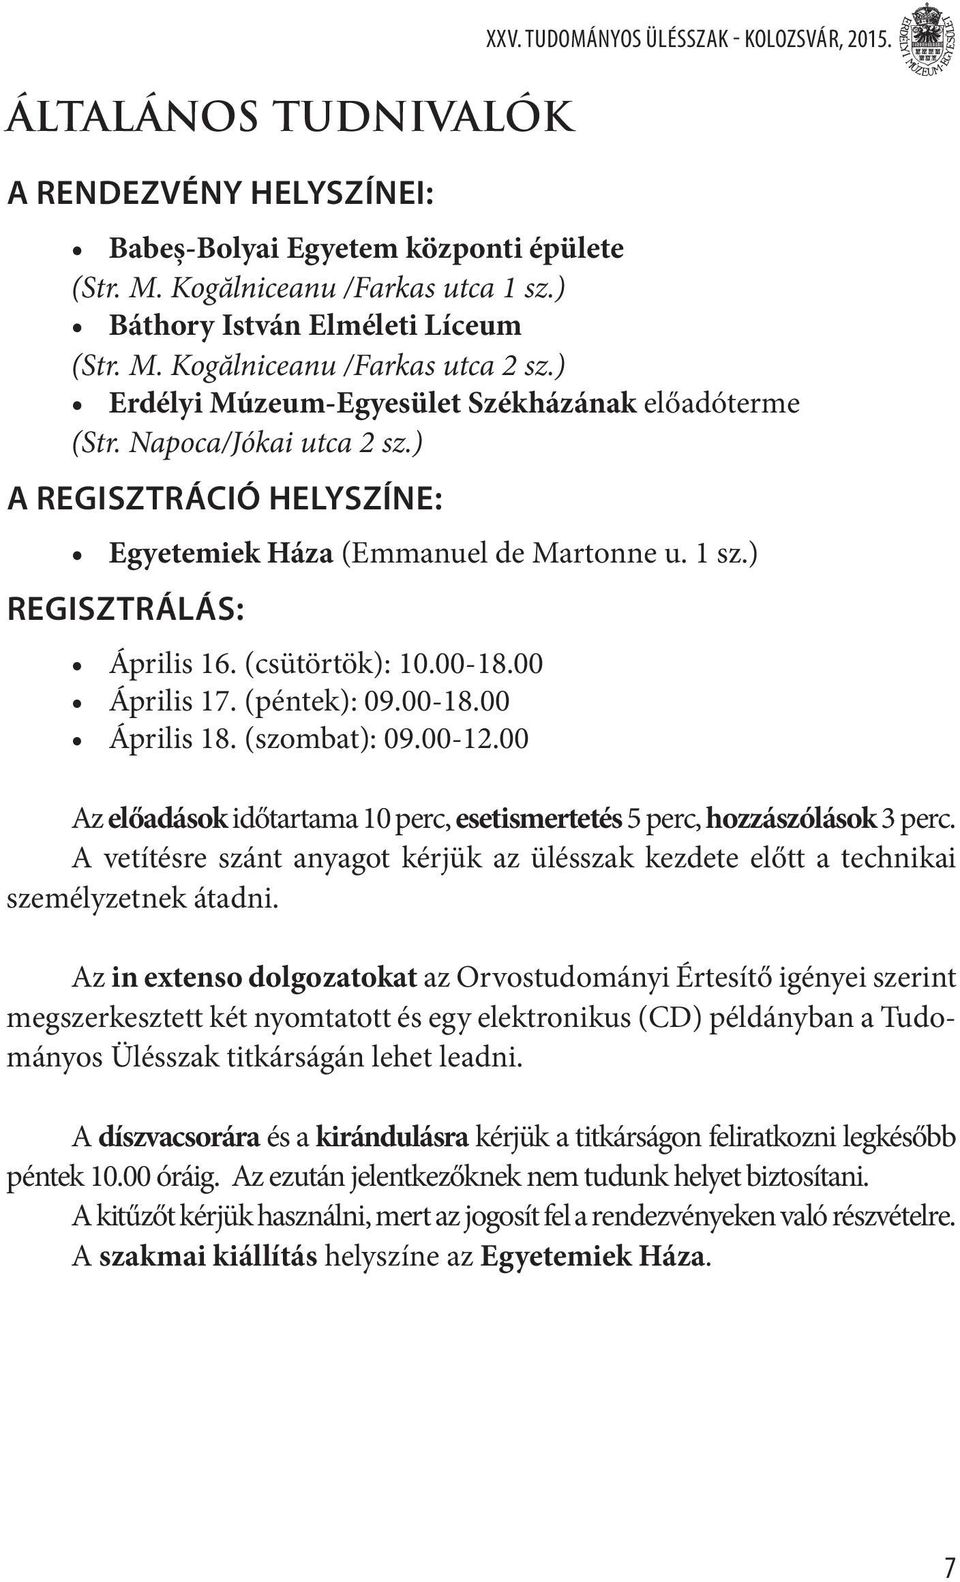 ) A regisztráció helyszíne: Egyetemiek Háza (Emmanuel de Martonne u. sz.) Regisztrálás: Április 6. (csütörtök): 0.00-8.00 Április 7. (péntek): 09.00-8.00 Április 8. (szombat): 09.00-2.